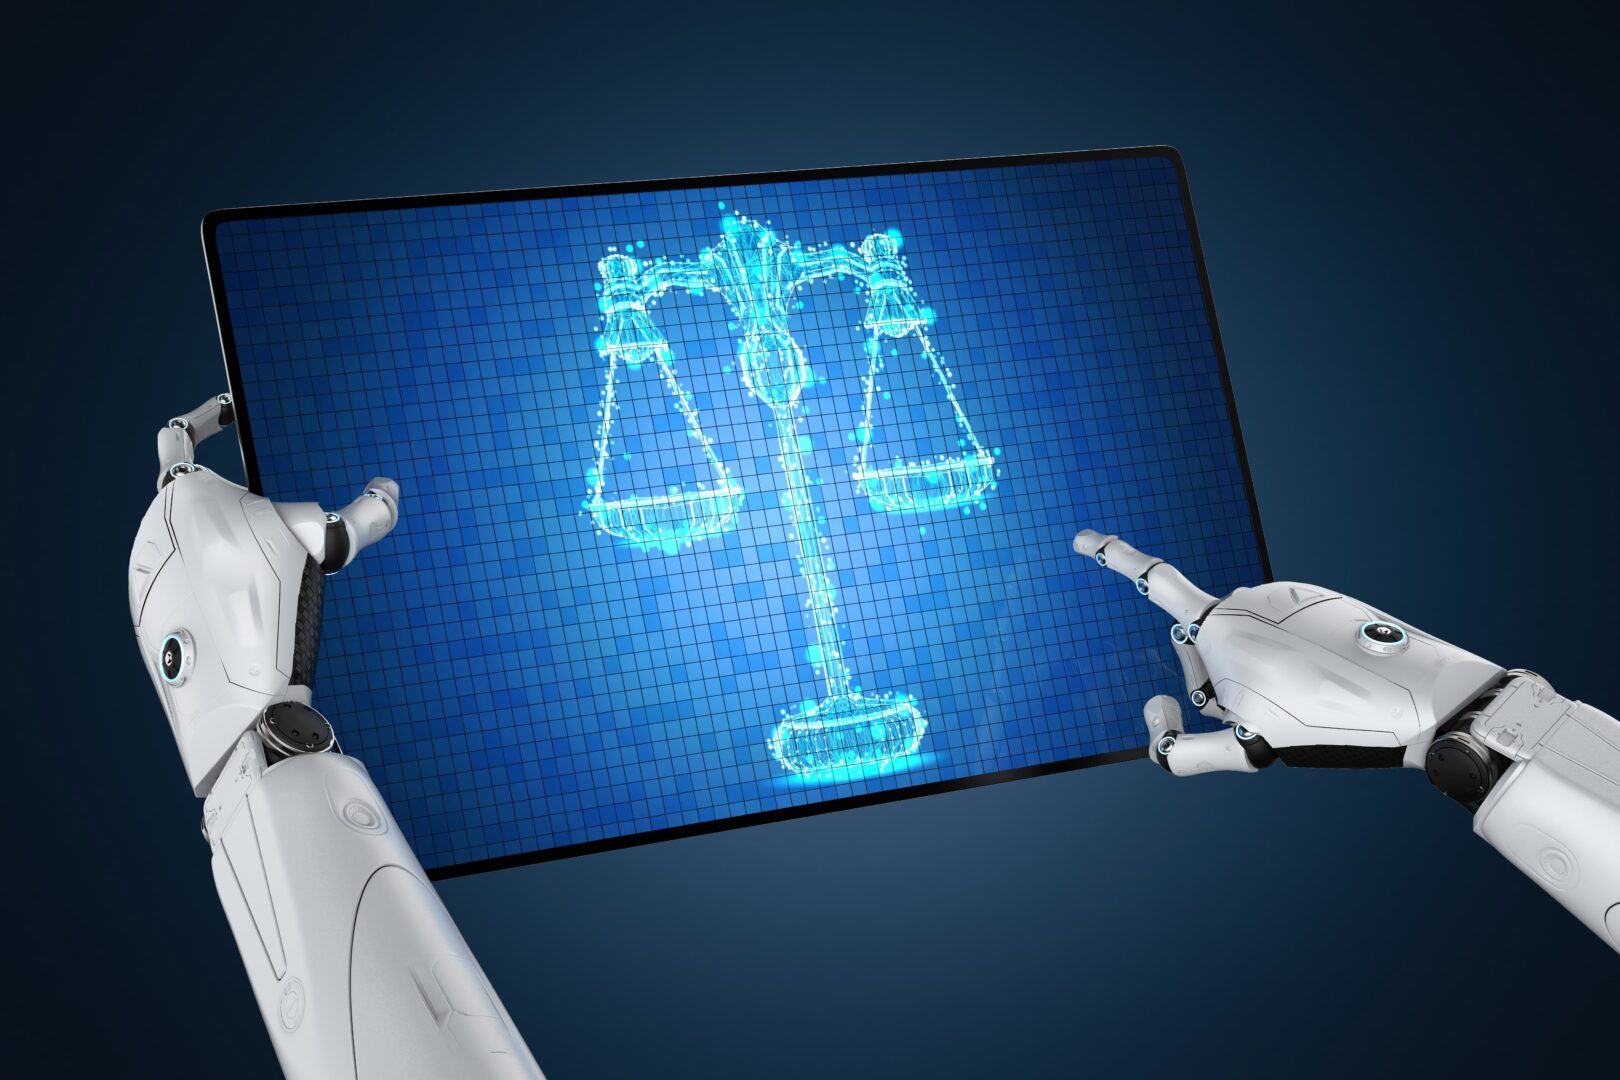 Featured image for “Inteligência artificial: como essa tecnologia afeta a advocacia?”